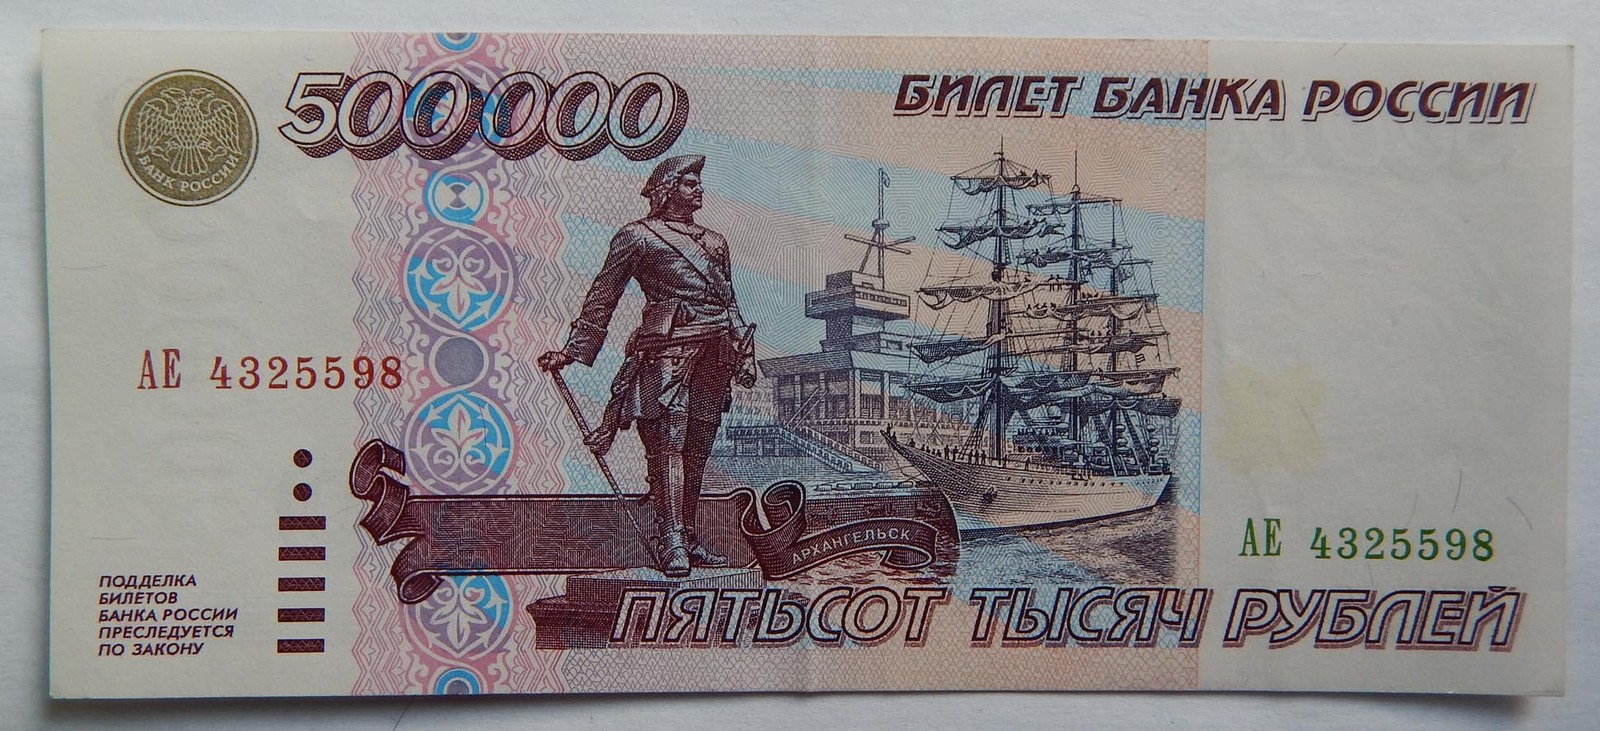 Пятьсот пять рублей. Купюра 500 000 рублей 1995 года. Банкнота 500000 рублей 1995. 500 000 Рублей 1995 года. Банкнота 500000 рублей 1995 года.